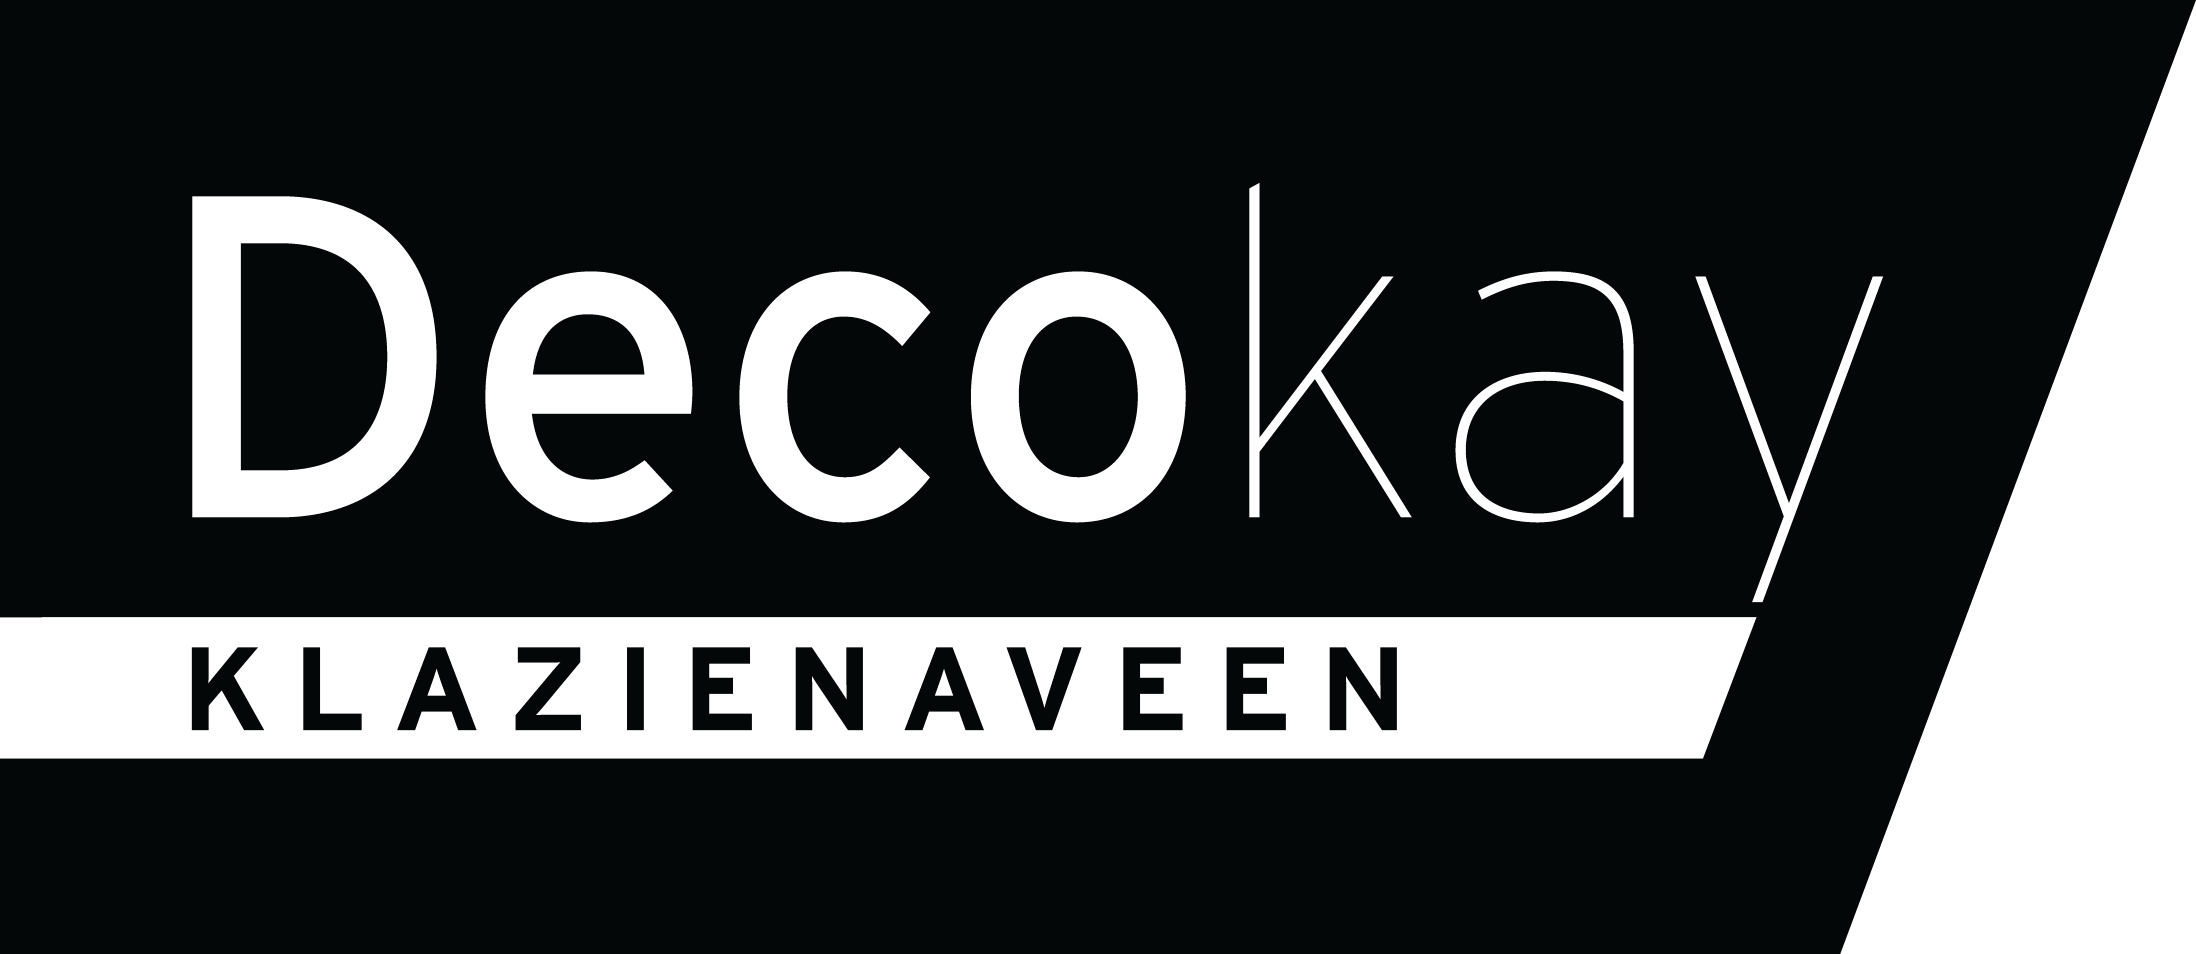 Logo Decokay Klazienaveen